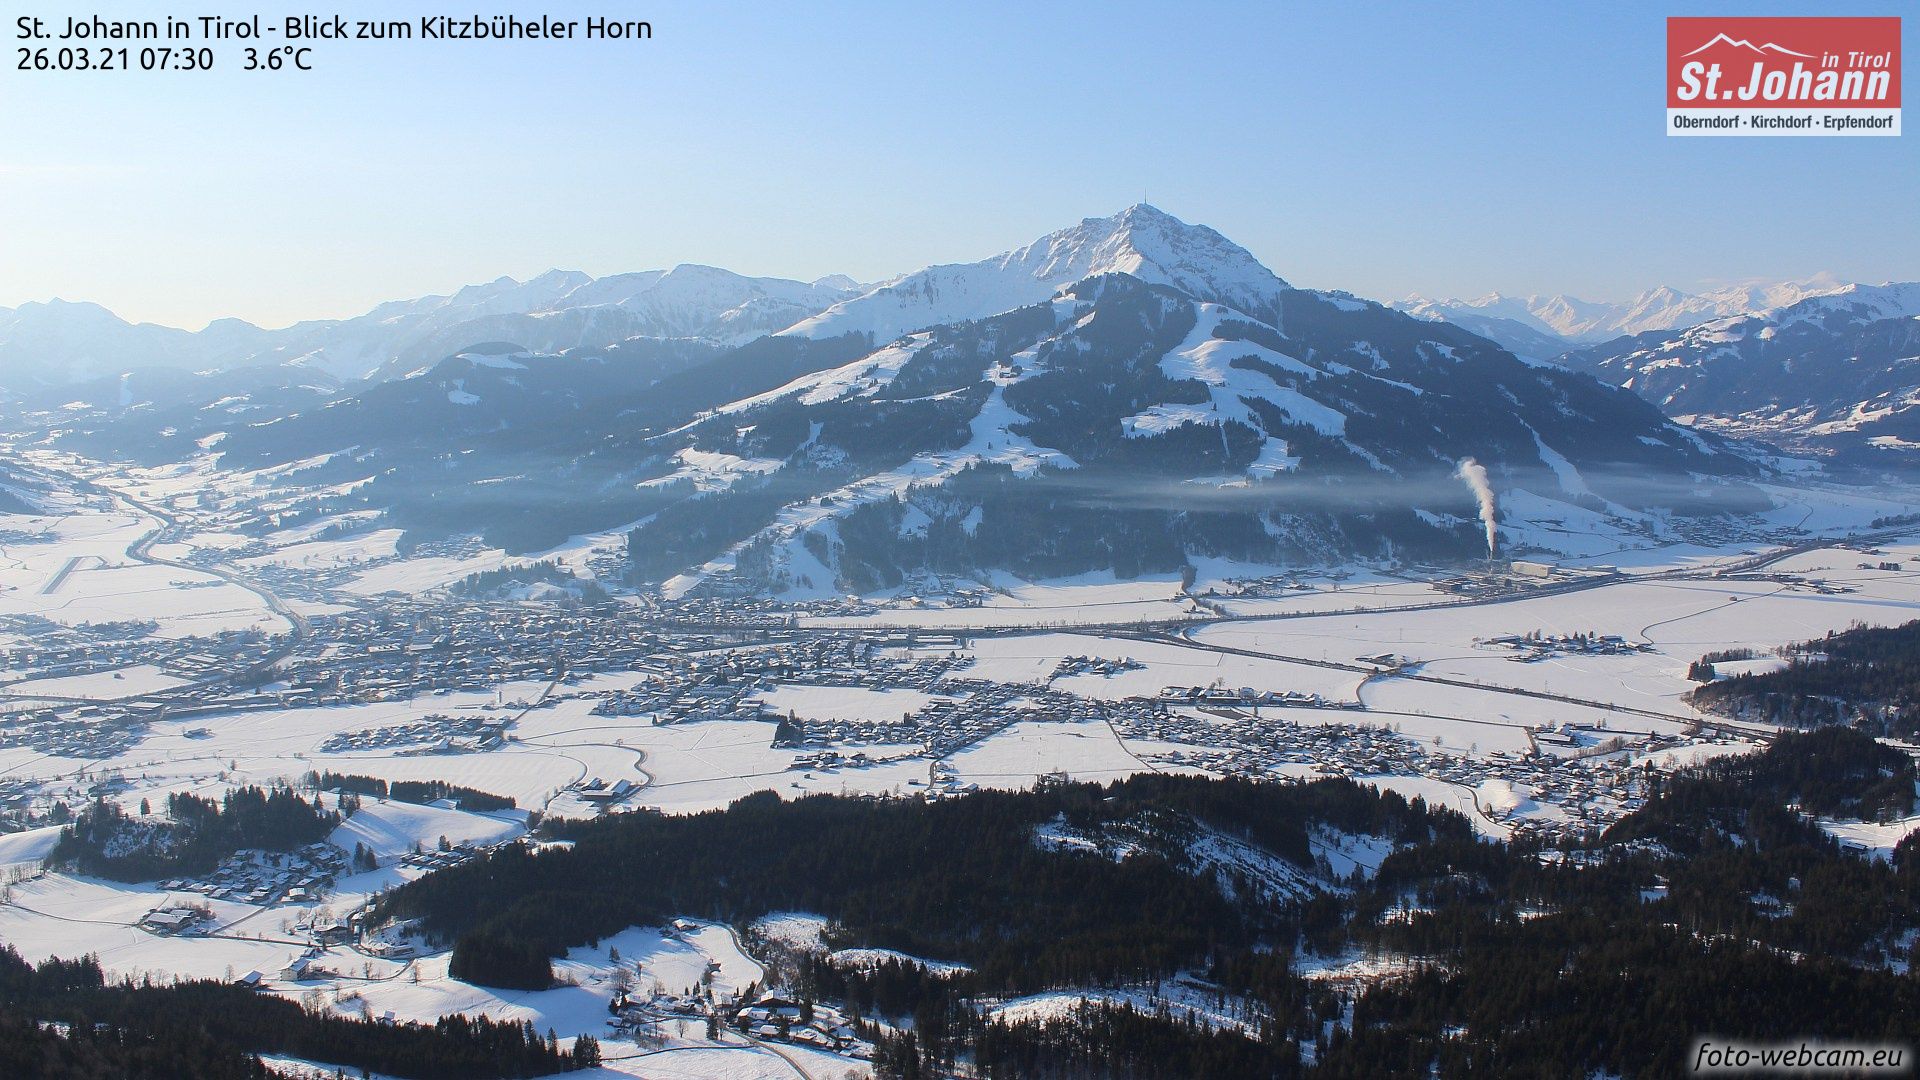 In de Kitzbüheler Alpen is het nog tot in de dalen wit (foto-webcam.eu)